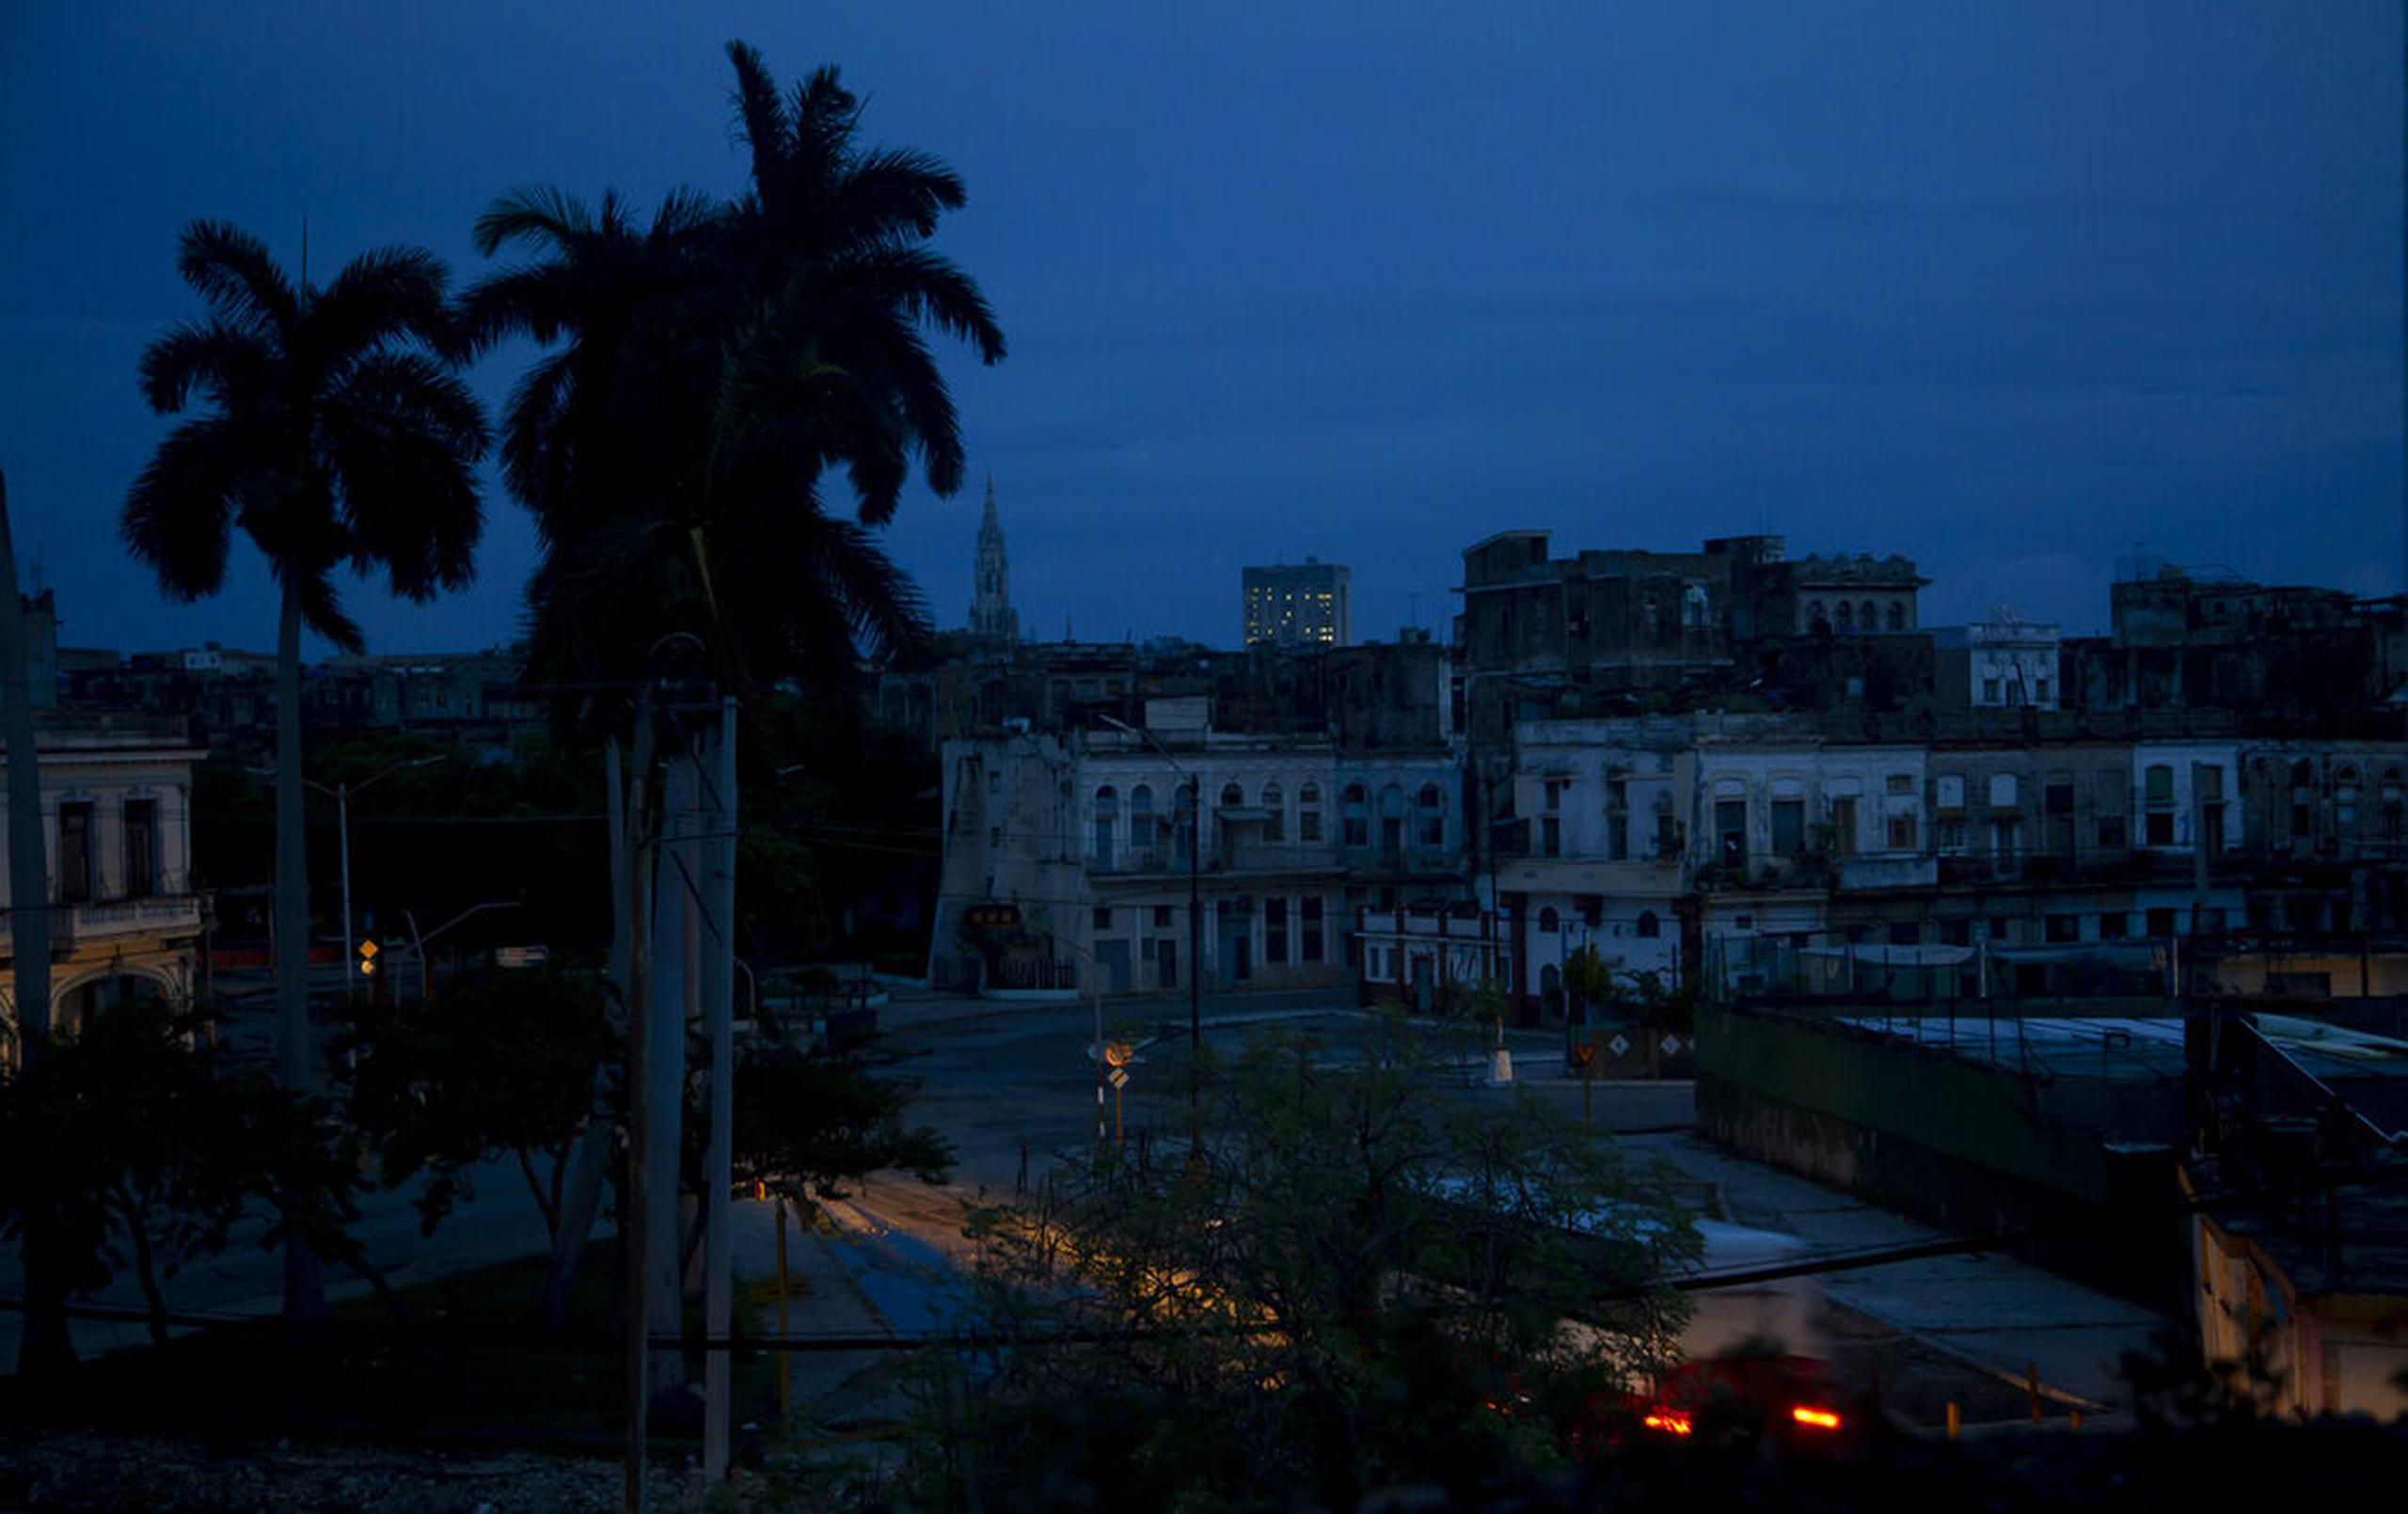 Un vecindario permanece a oscuras durante un apagón provocado por el paso del huracán Ian en La Habana, Cuba, la madrugada del 28 de septiembre de 2022.